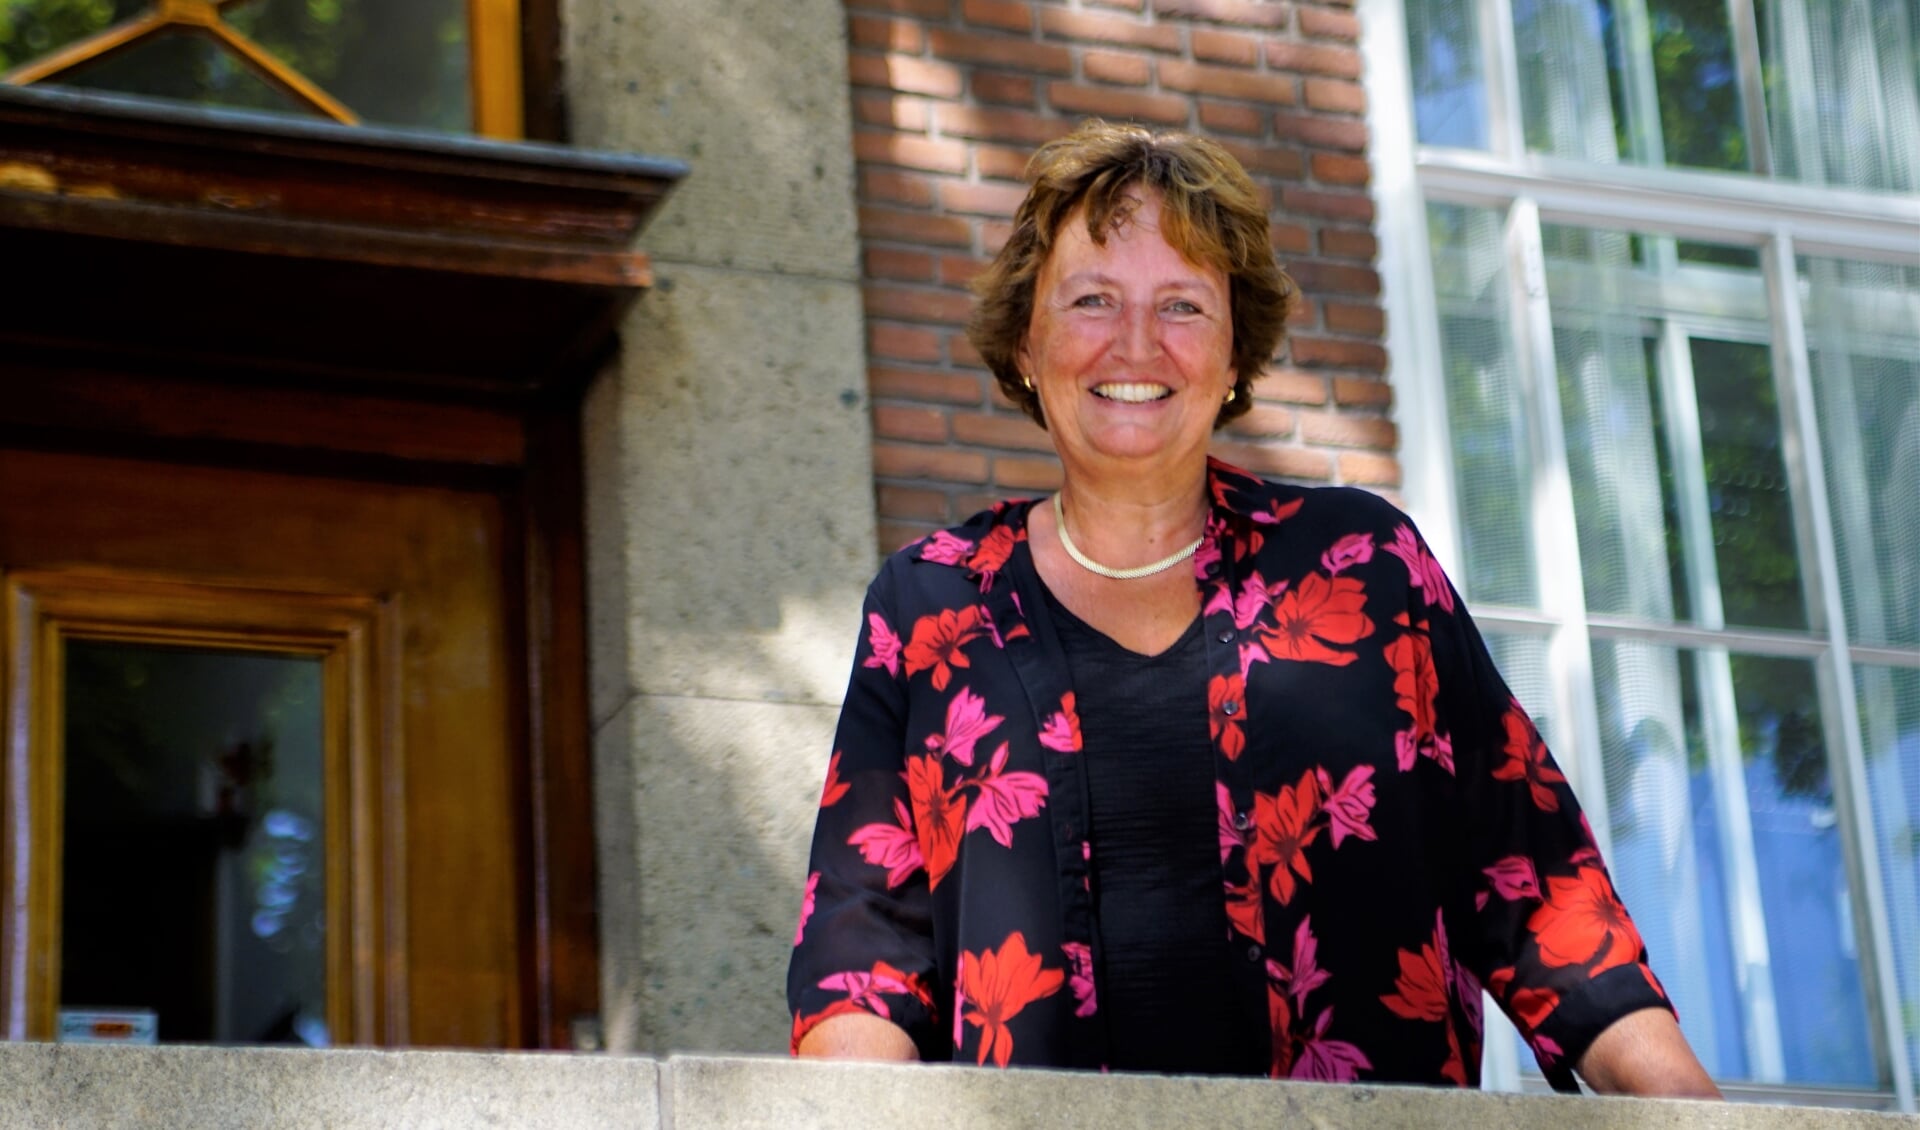 Burgemeester Liesbeth Spies ziet het feit dat ze in Alphen aan den Rijn is geboren als een voordeel.